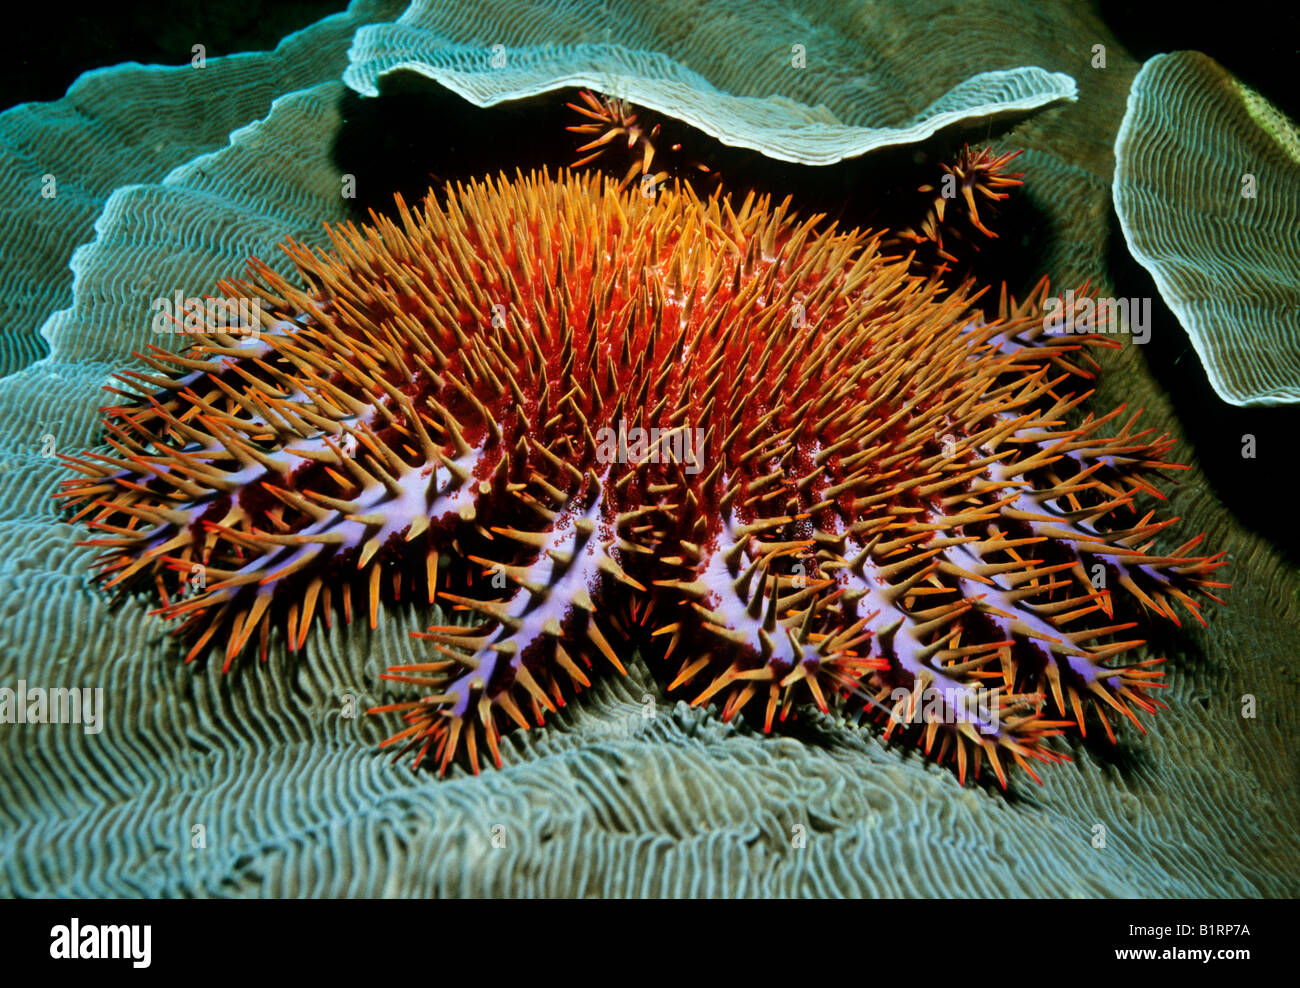 El depredador Estrella Corona de espinas de pescado (Acanthaster planci) se alimenta de los pólipos de corales pétreos (Scleractiniaor), Omán, Arabi Foto de stock